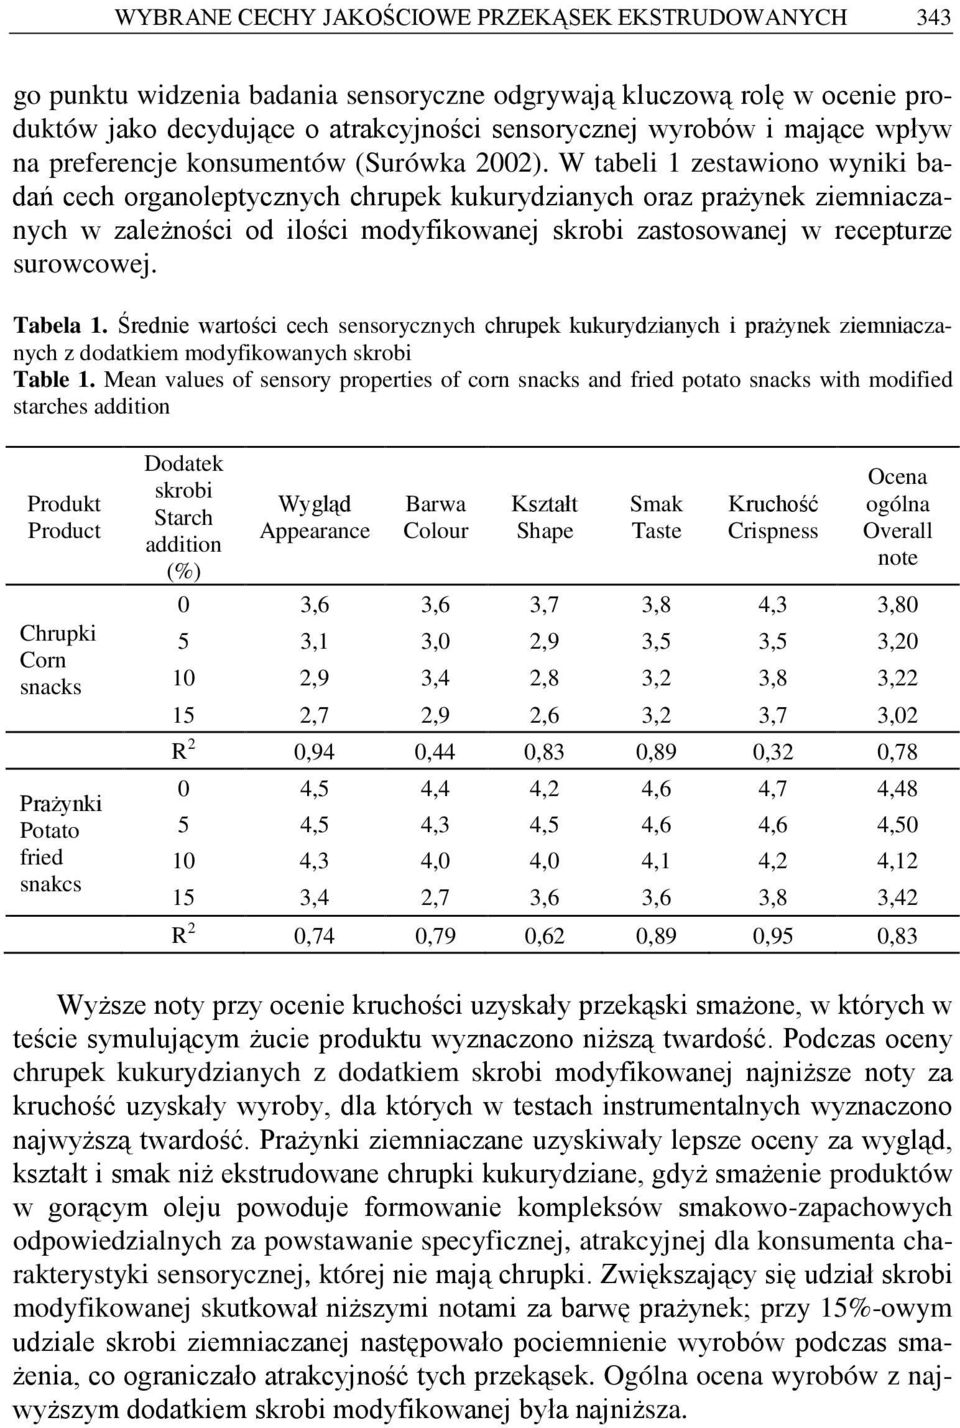 W tabeli 1 zestawiono wyniki badań cech organoleptycznych chrupek kukurydzianych oraz prażynek ziemniaczanych w zależności od ilości modyfikowanej skrobi zastosowanej w recepturze surowcowej.